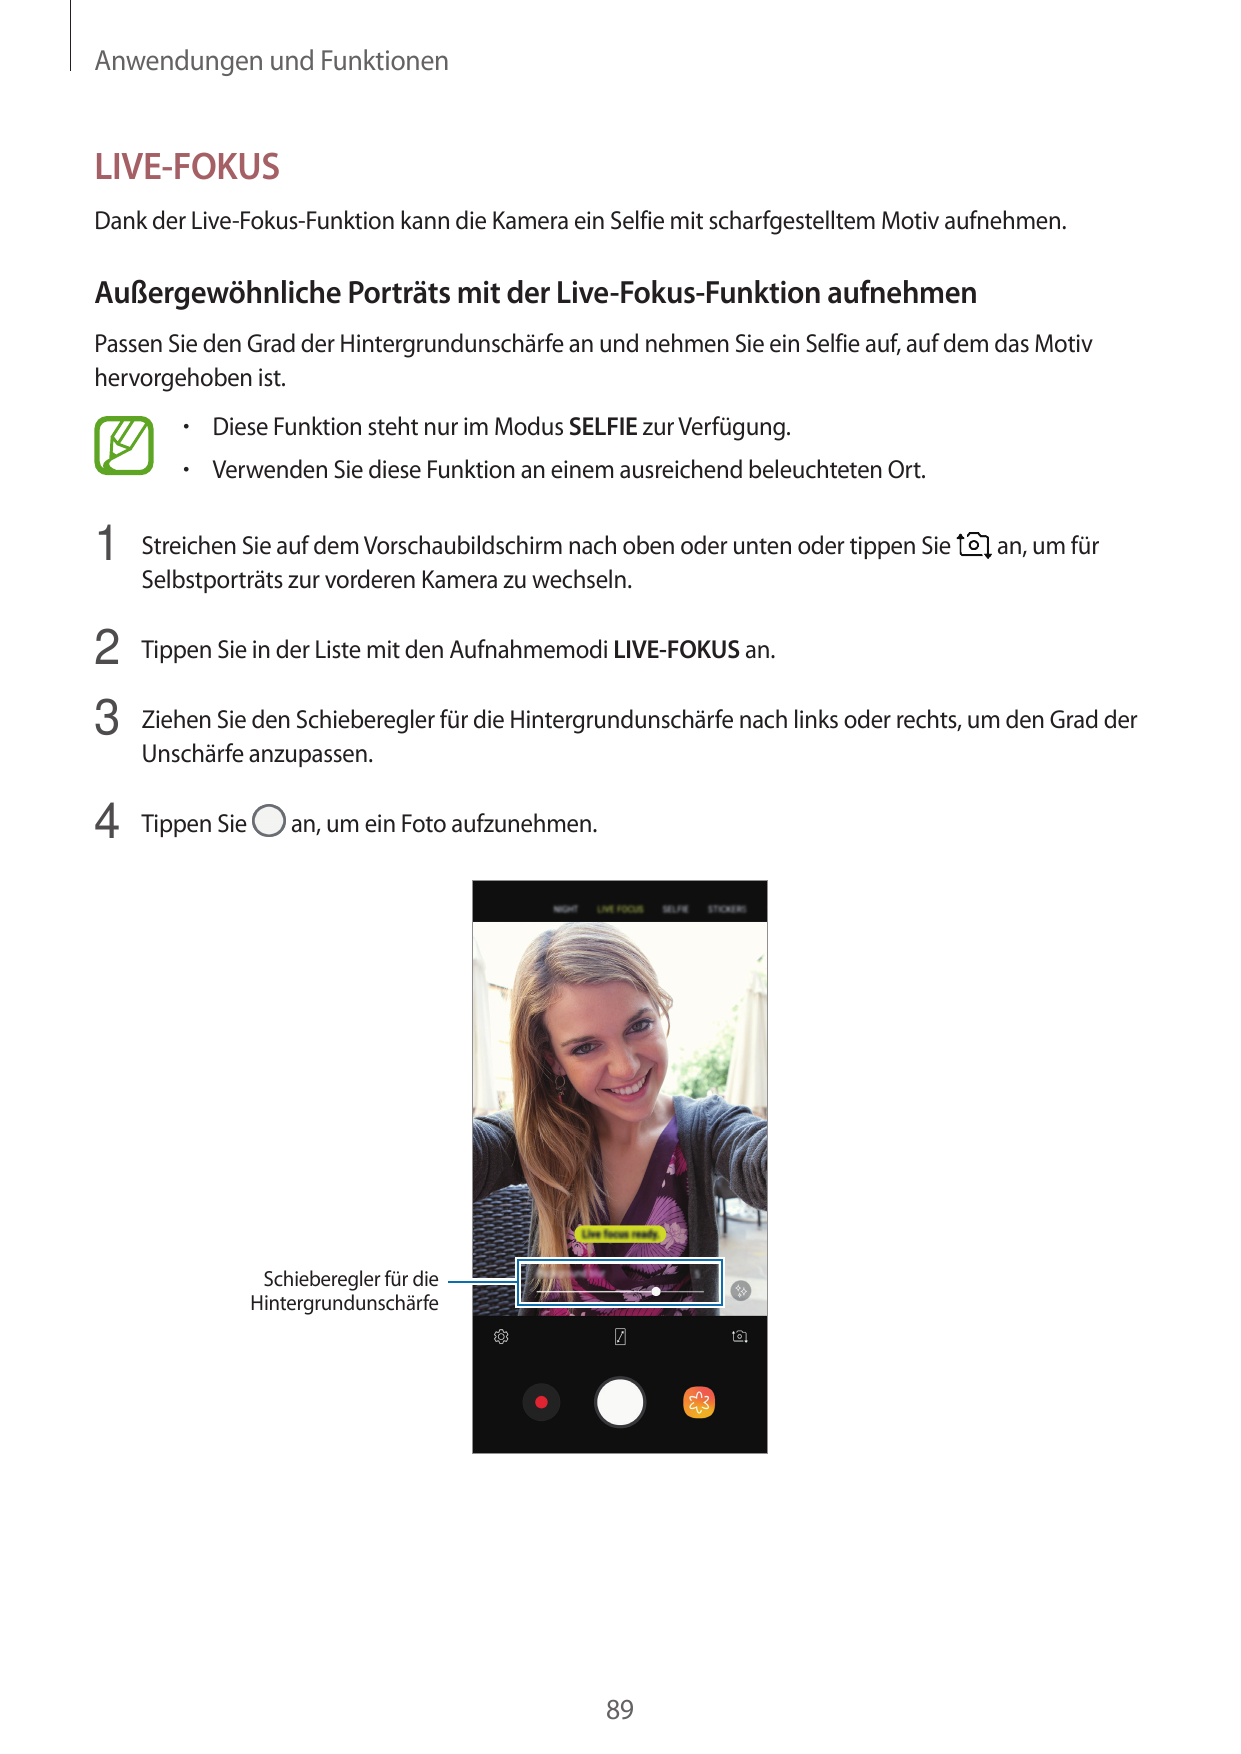 Anwendungen und FunktionenLIVE-FOKUSDank der Live-Fokus-Funktion kann die Kamera ein Selfie mit scharfgestelltem Motiv aufnehmen